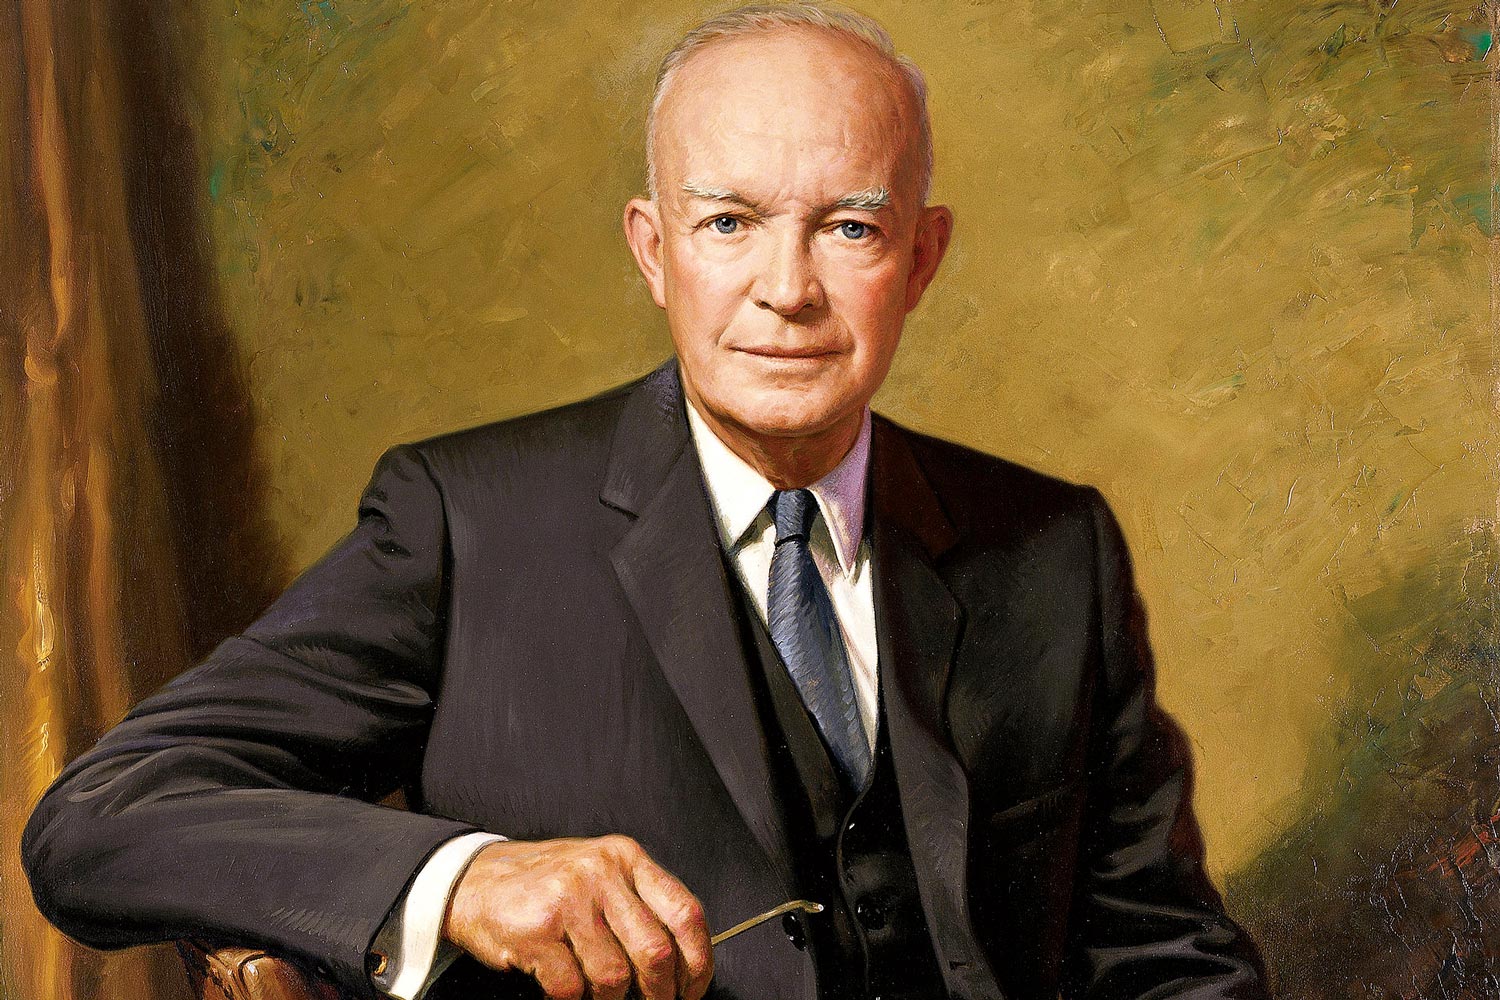 Painting of President Eisenhower